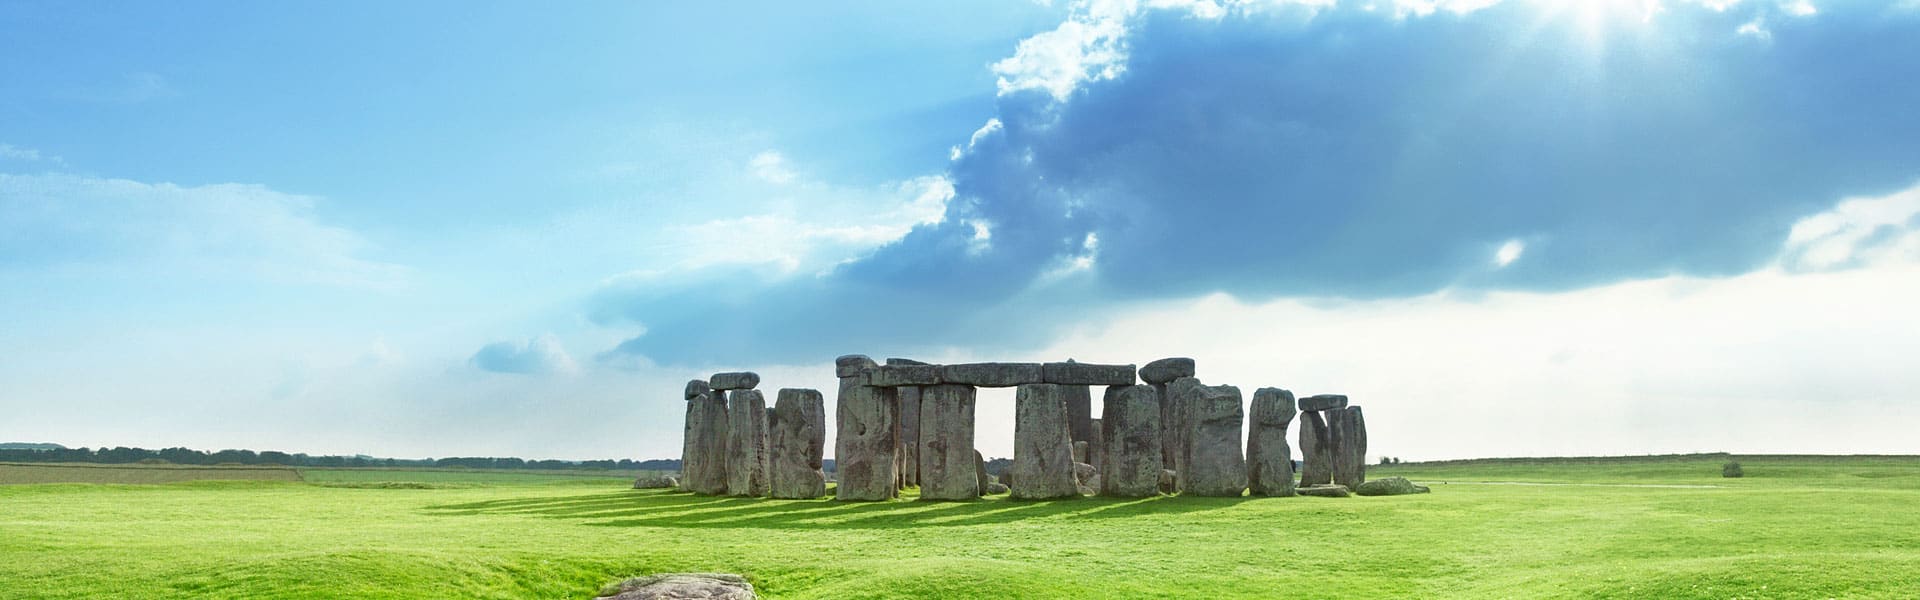 Erleben Sie ein UNESCO-Weltkulturerbe hautnah! Sehenswürdigkeiten Wiltshire Stonehenge in England